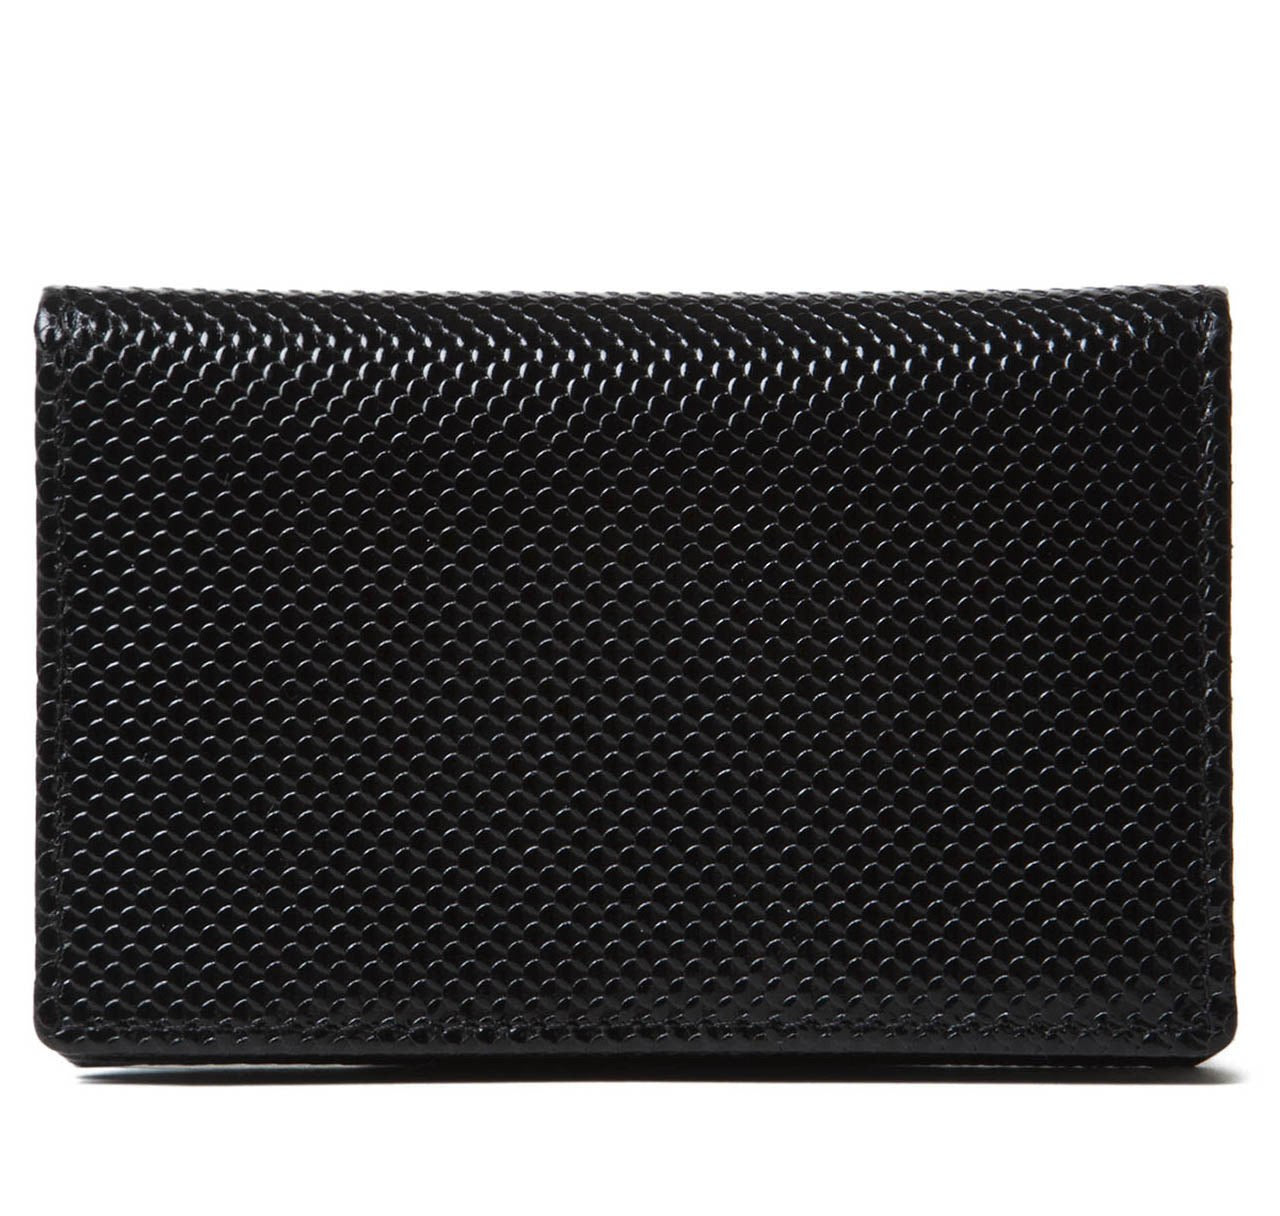 Black Carbon Fibre Leather Business Card Case